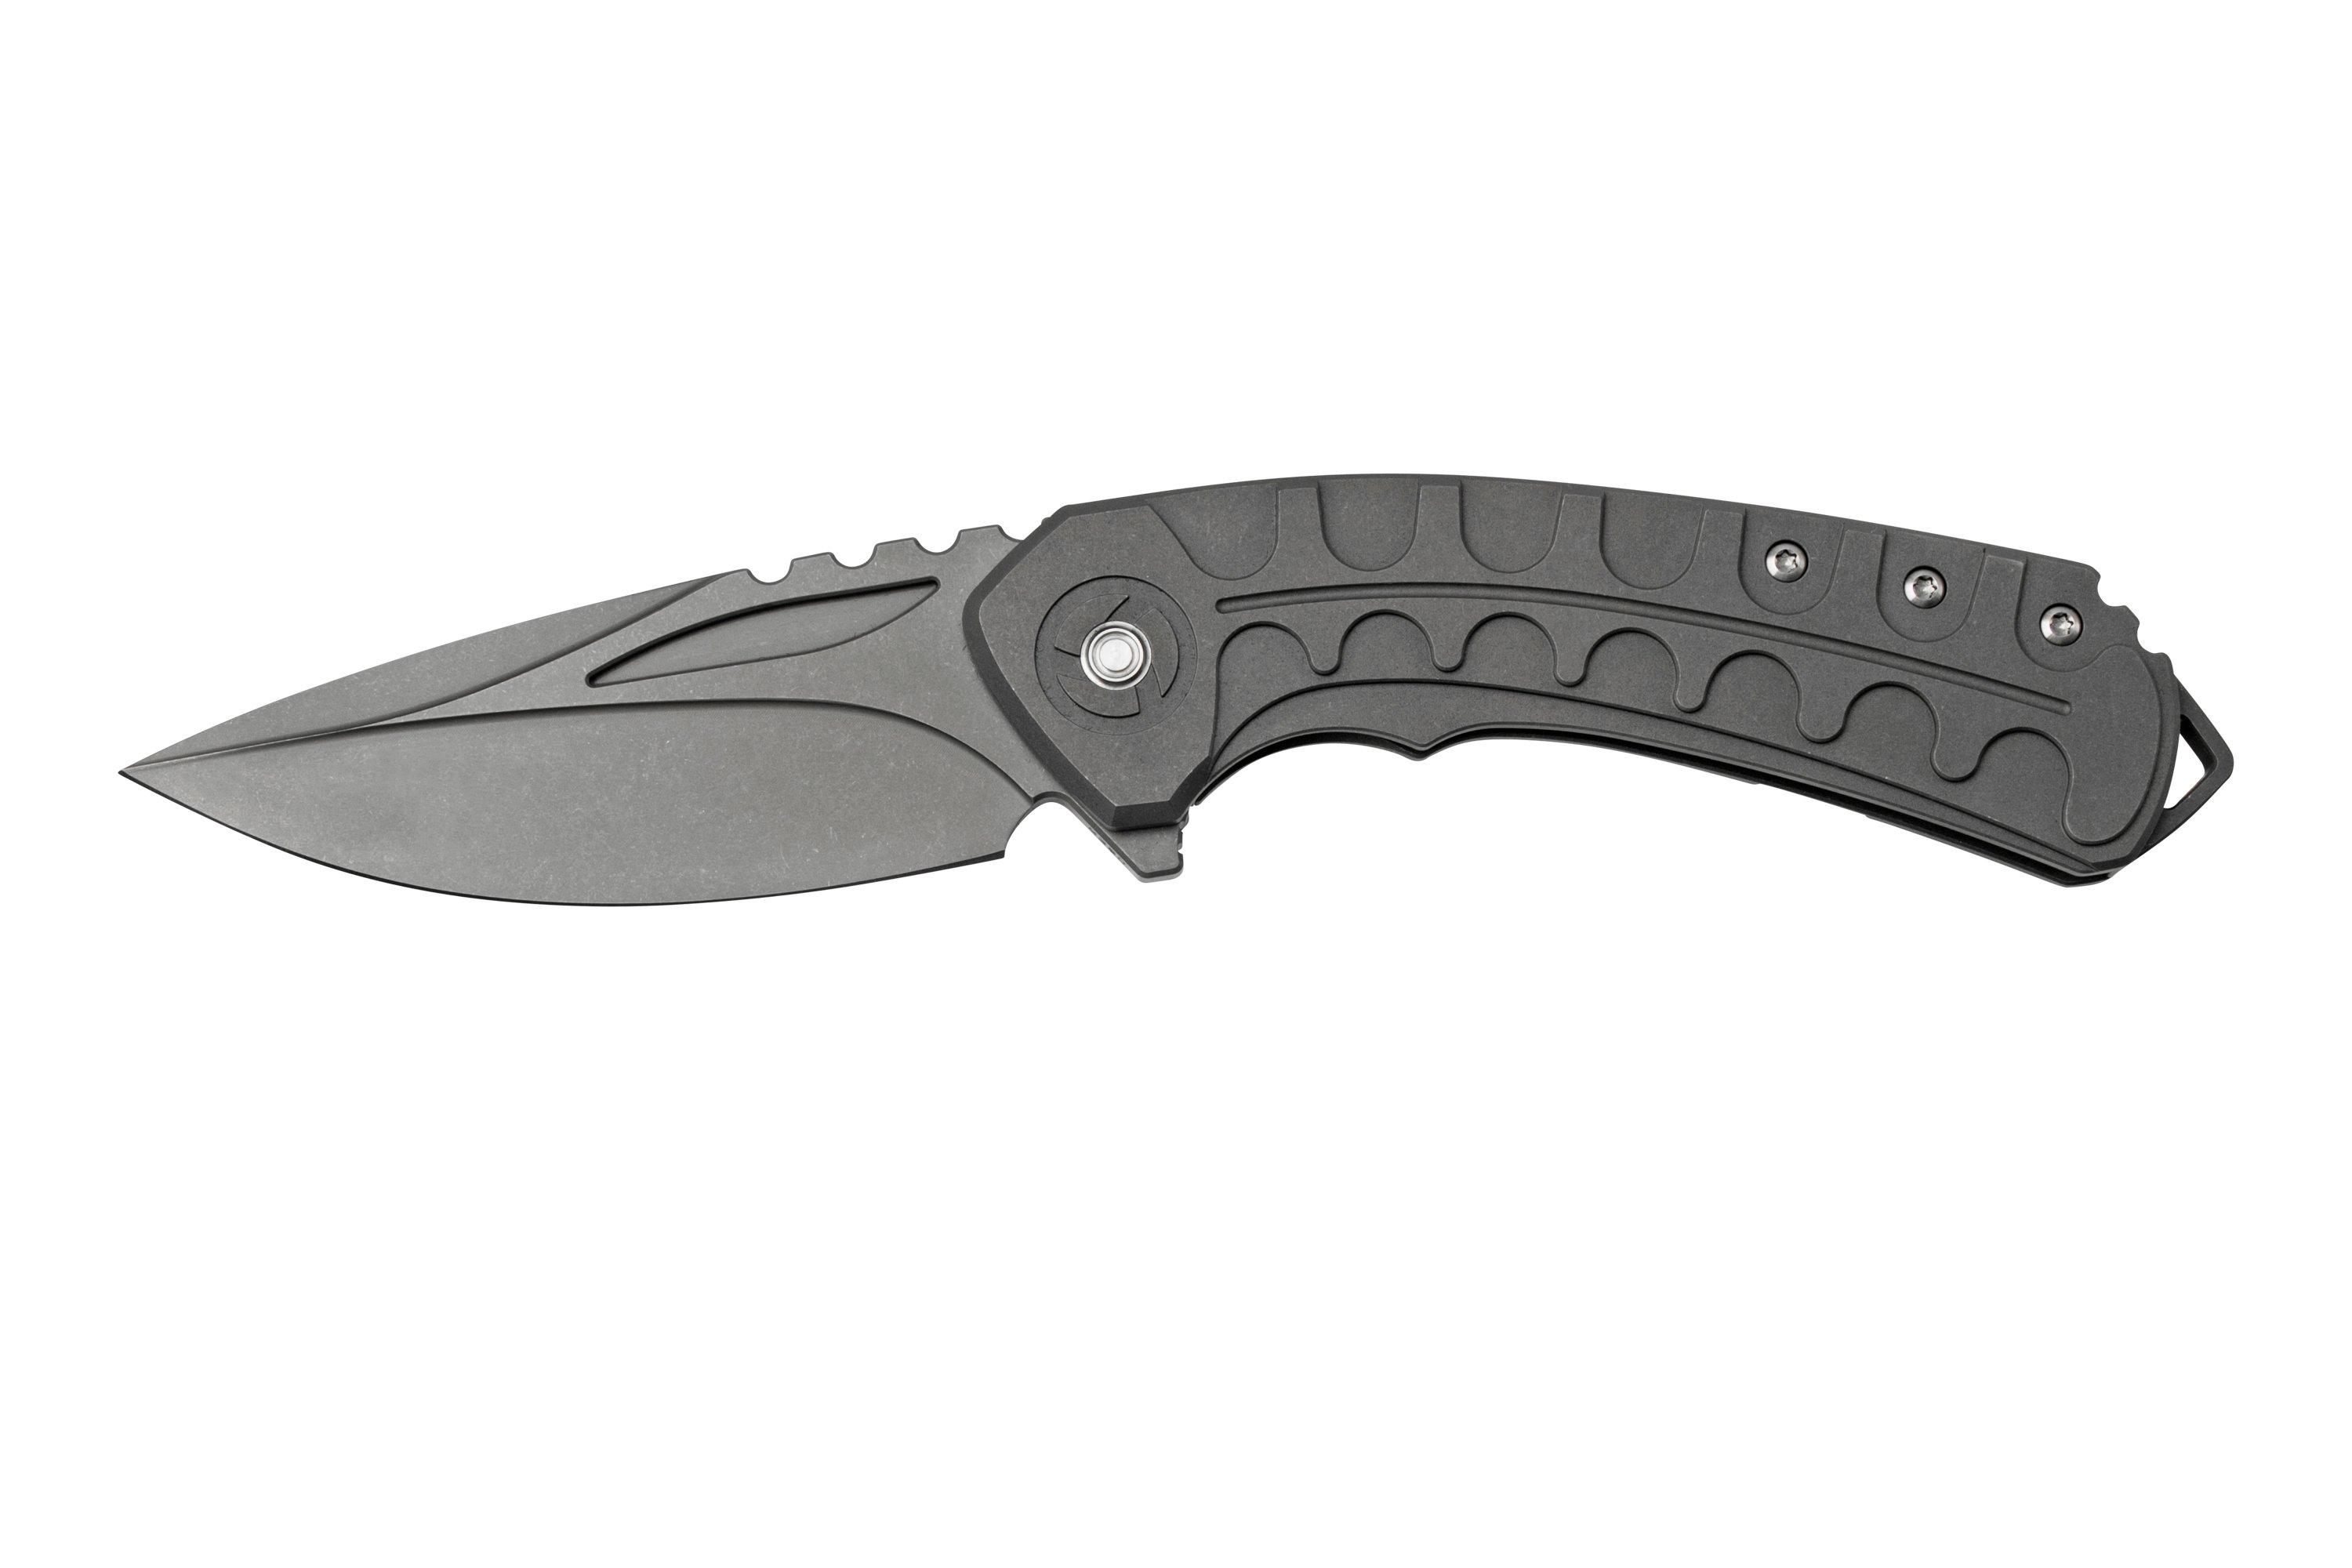 Bestech Buwaya BT2203A Grey Titanium, pocket knife | Advantageously ...